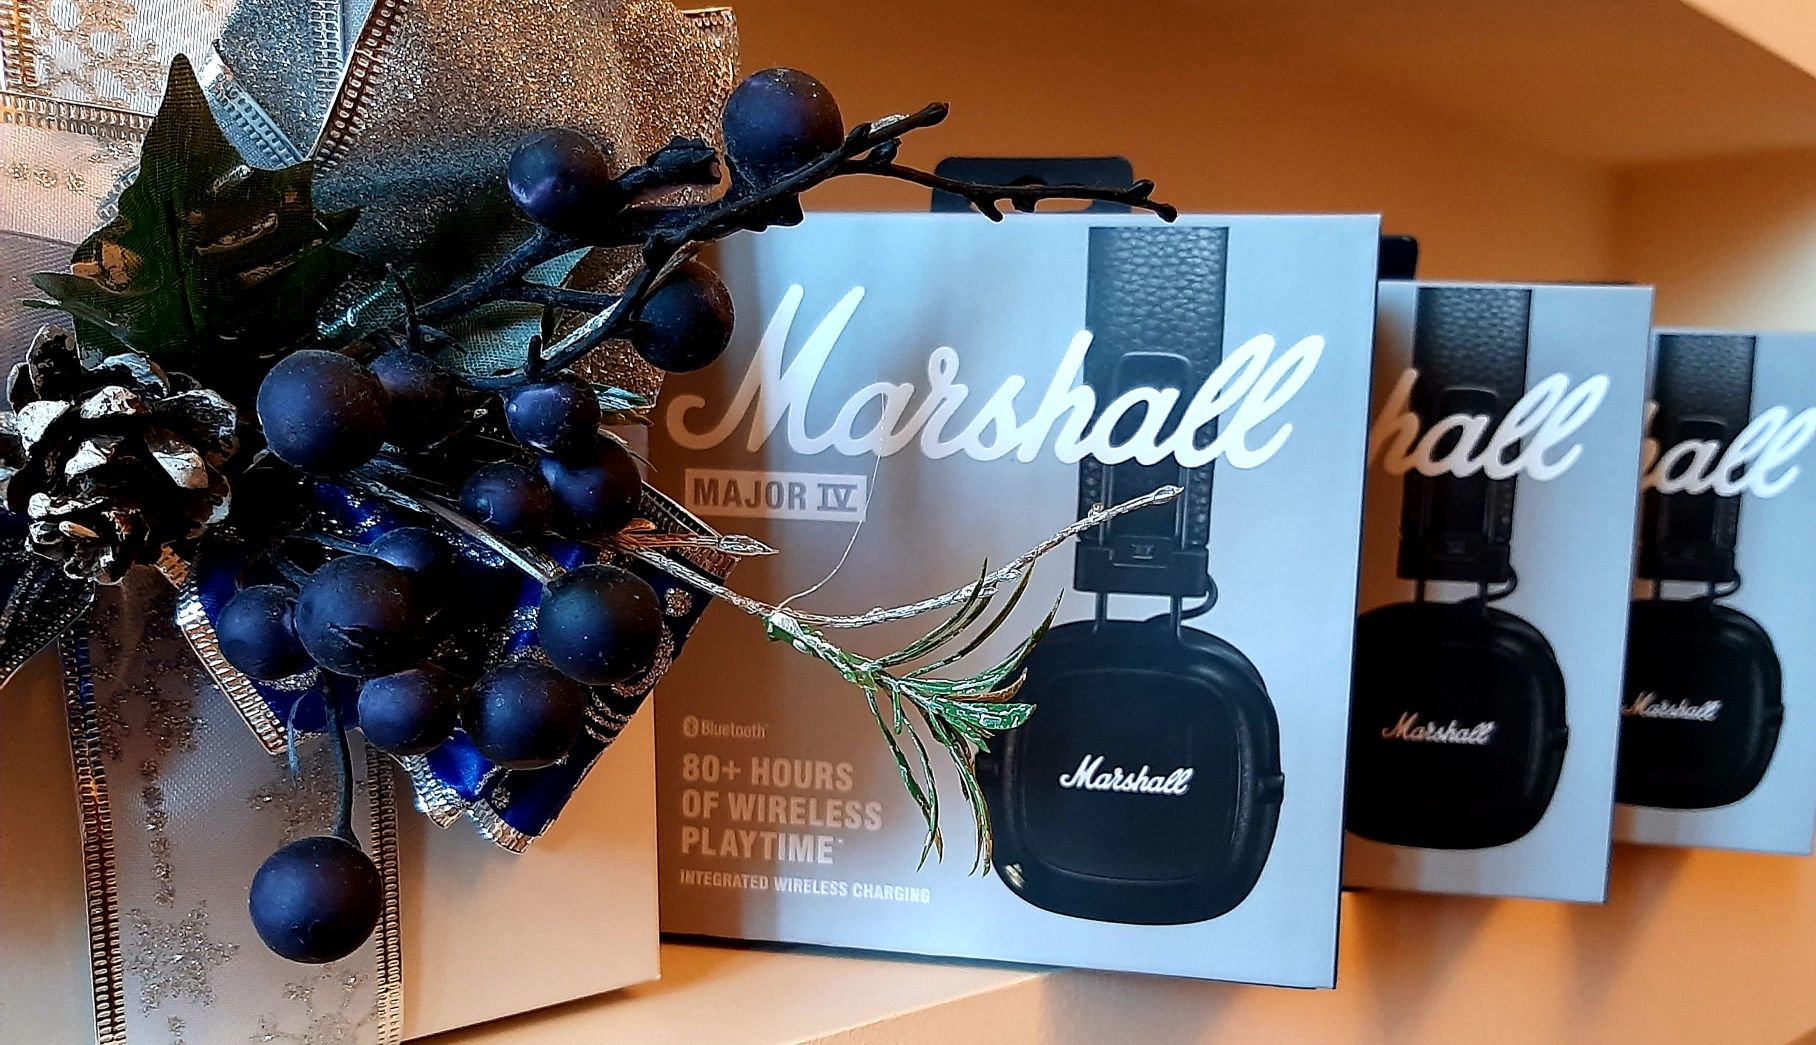 Оригінальні MARSHALL Major lV black навушники Маршал 4 в наявності New